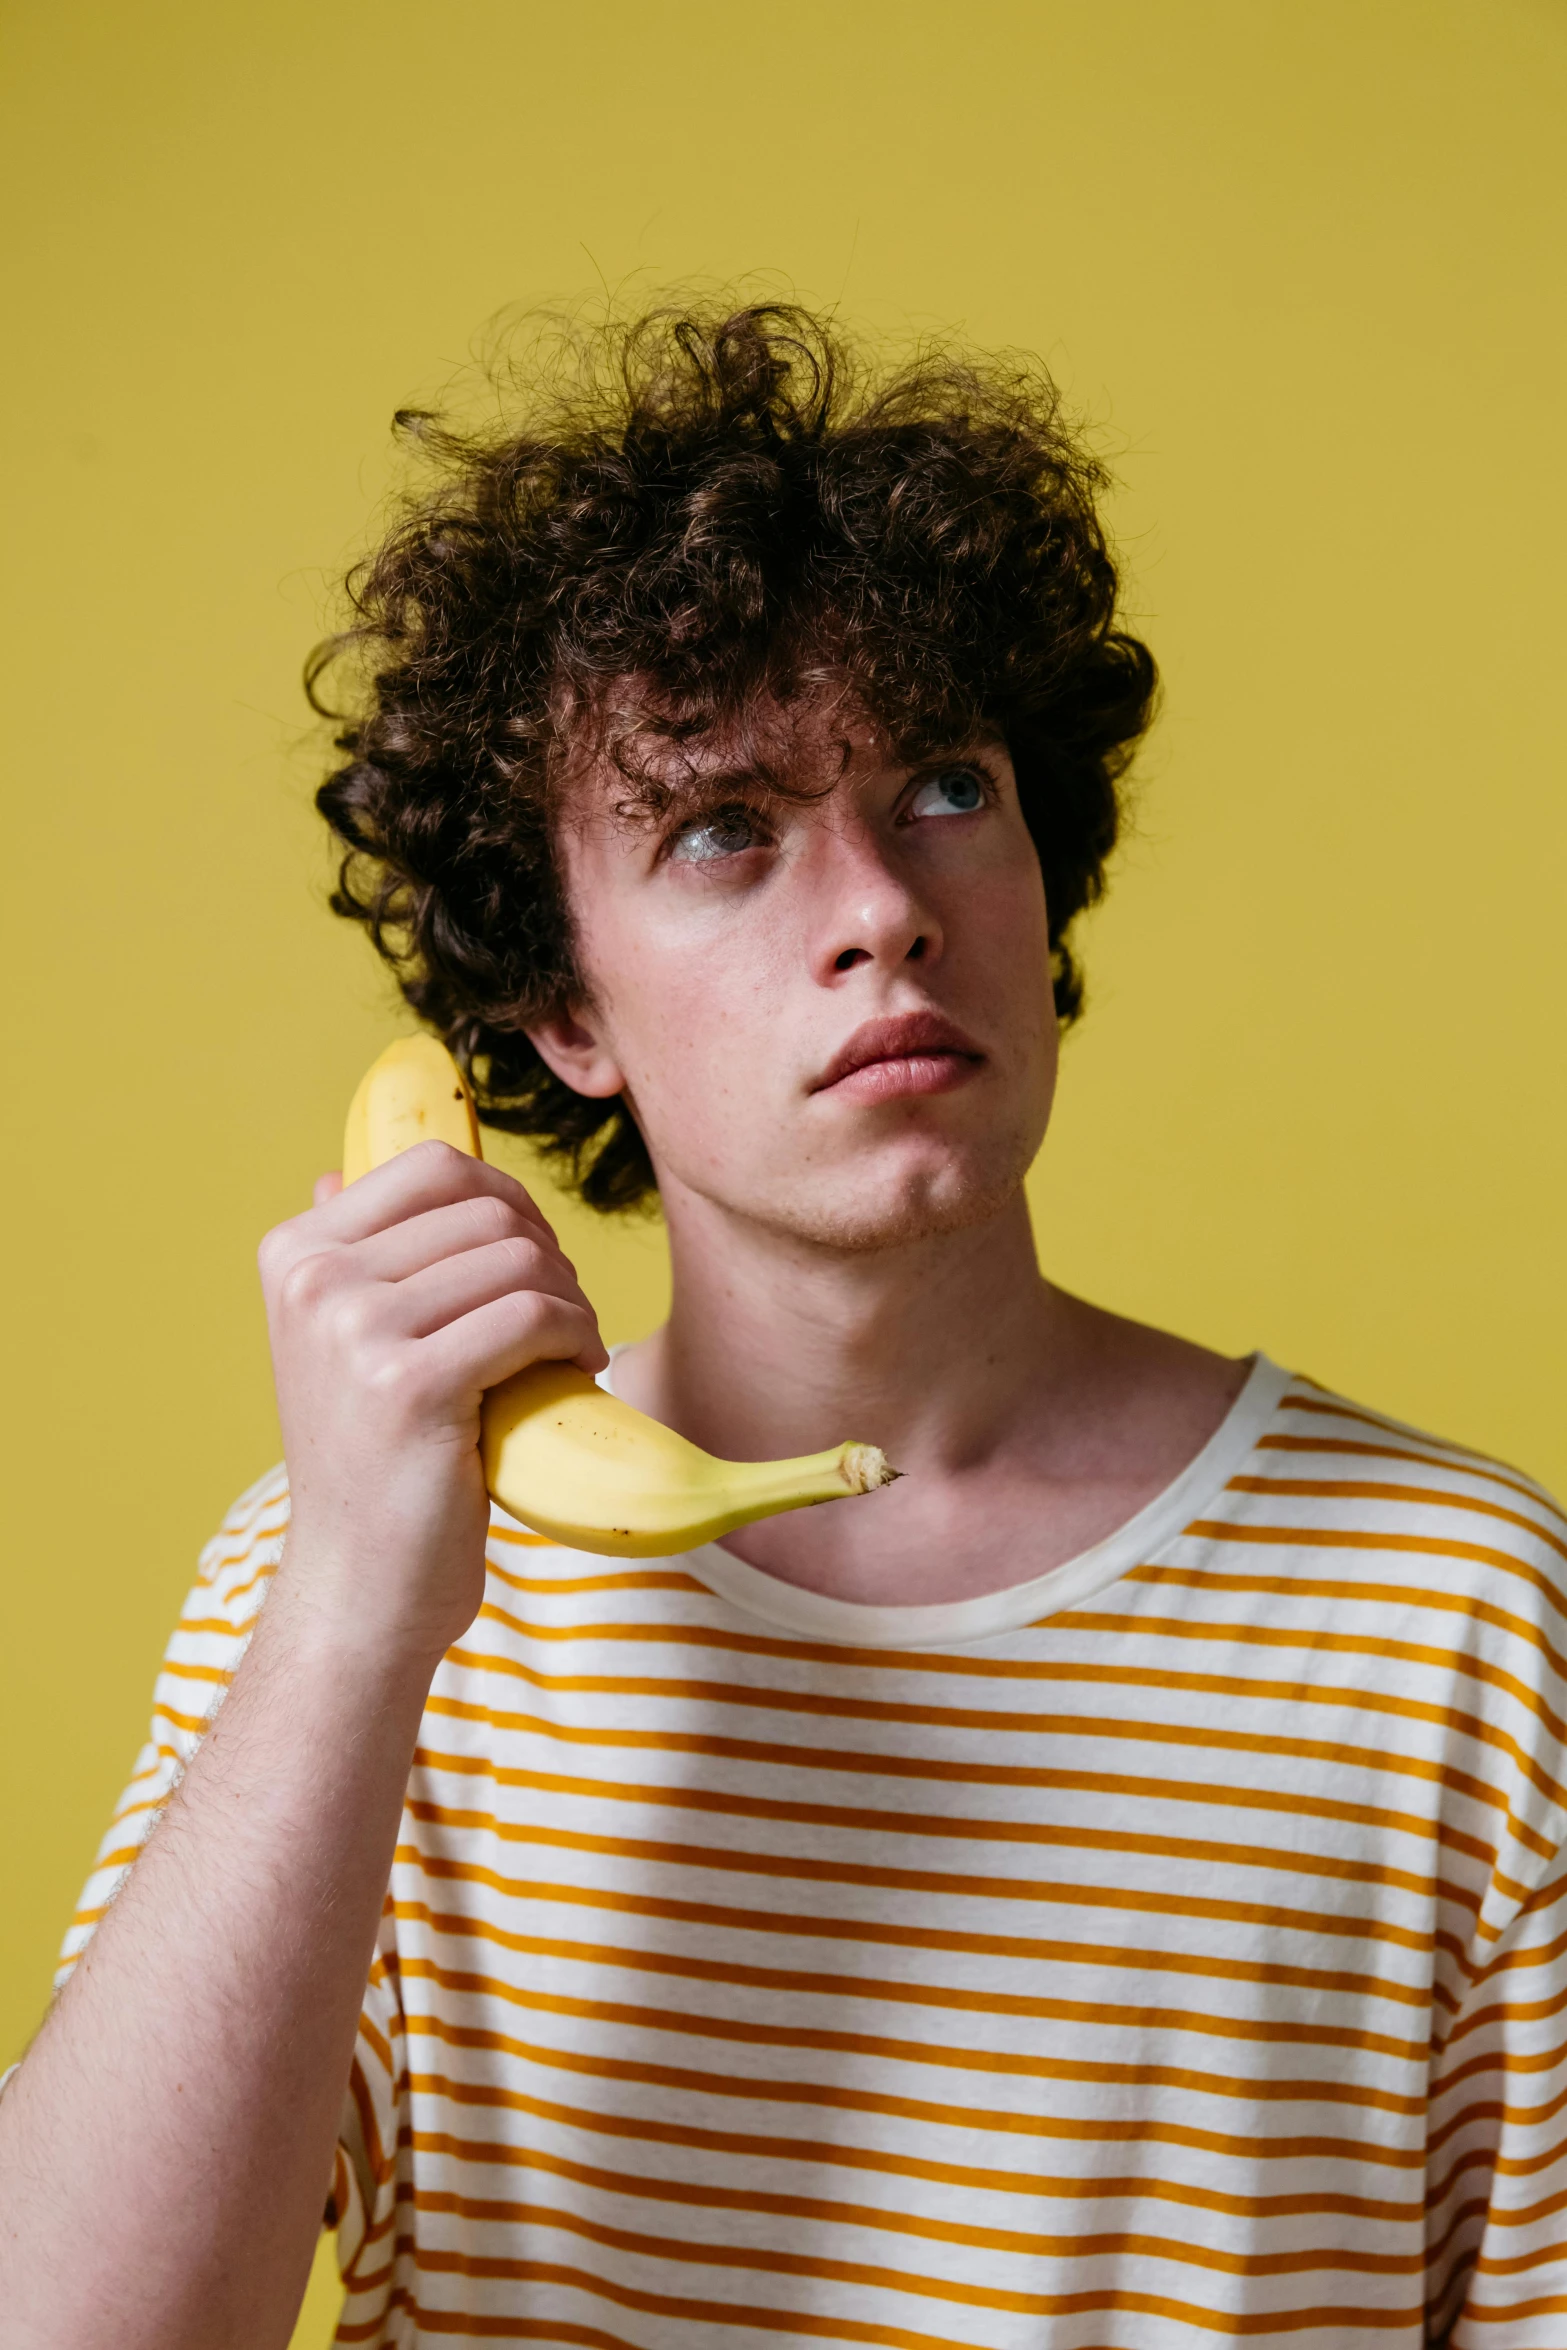 a boy holding a banana to his face